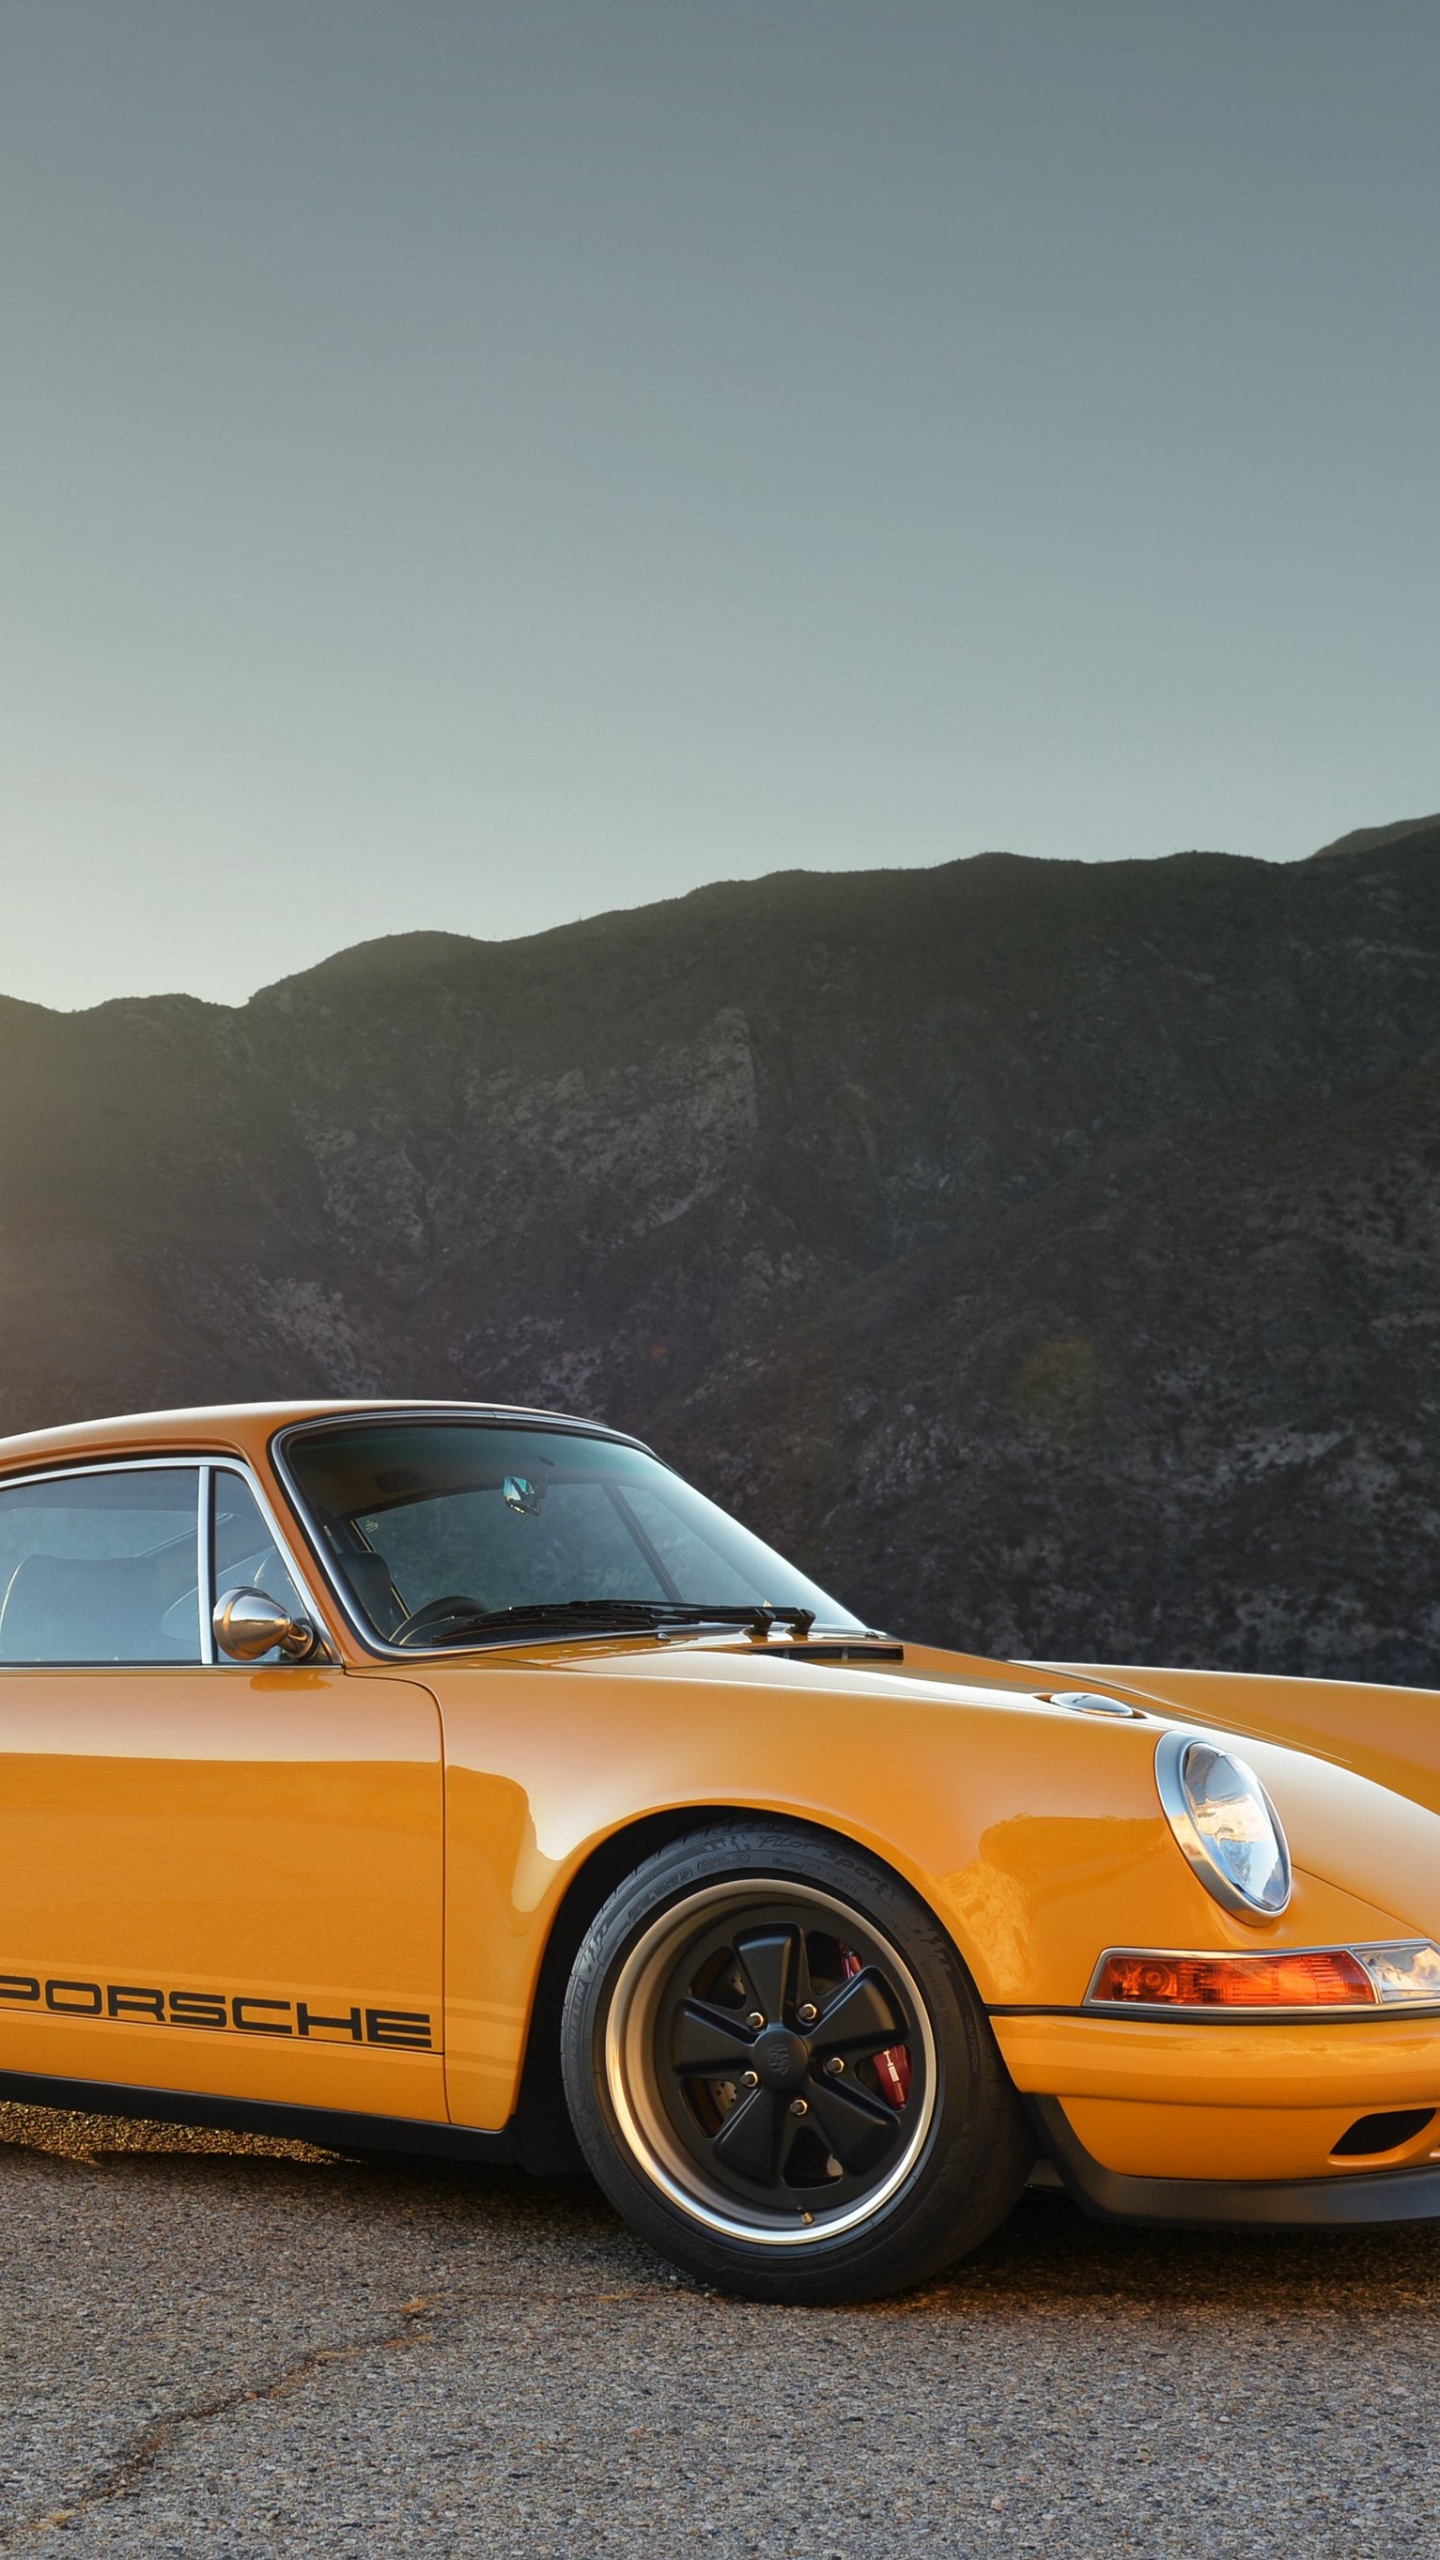 Gelber Porsche 911 Auf Braunem Feldweg Tagsüber. Wallpaper in 1440x2560 Resolution